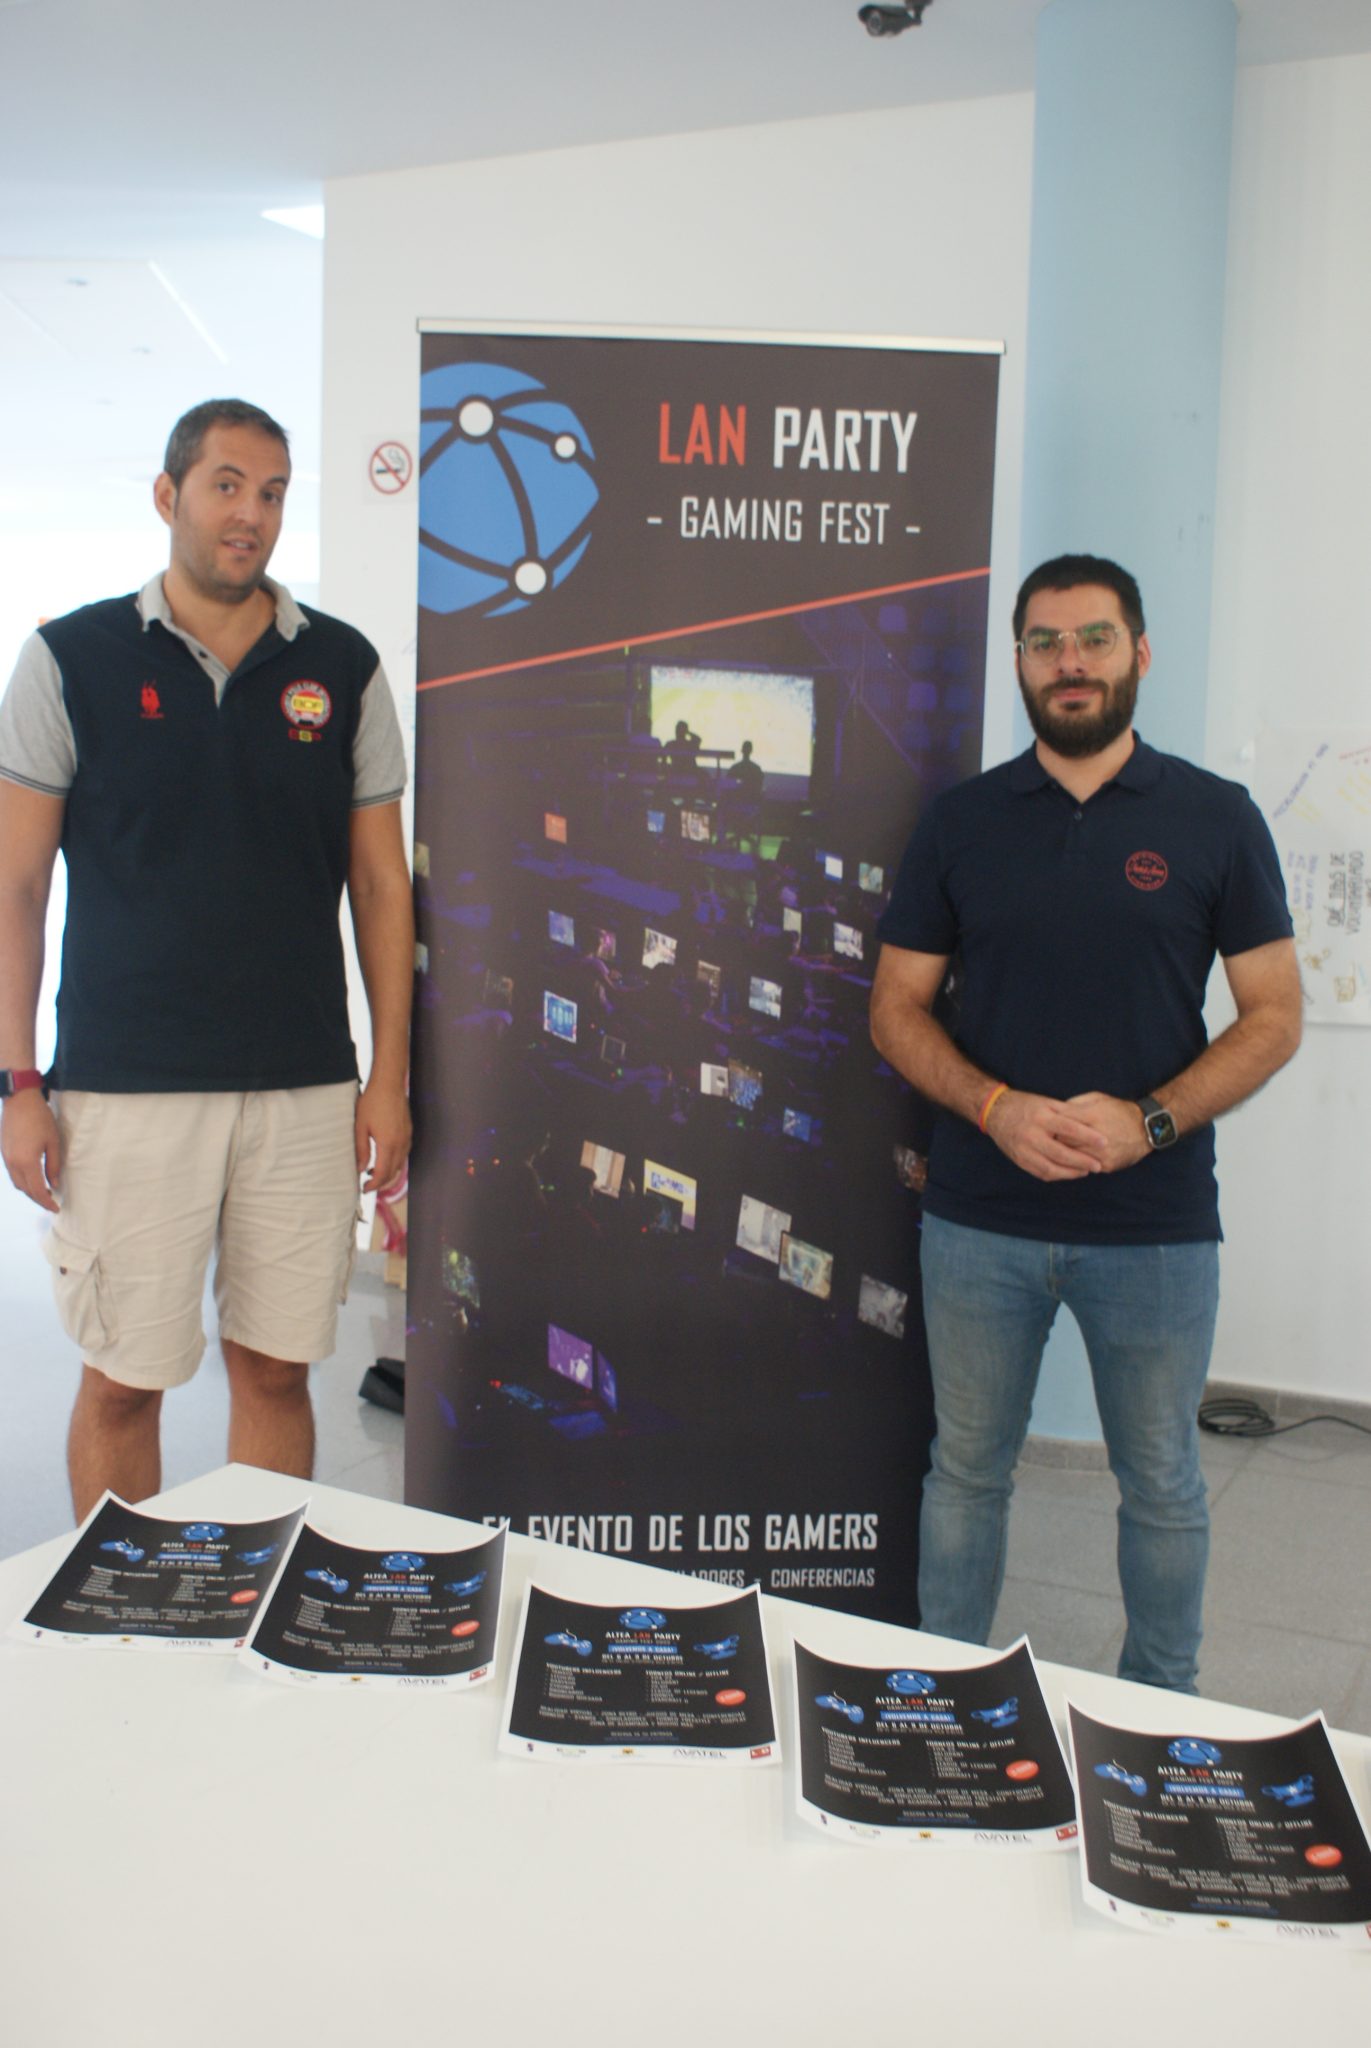 Altea Lan Party anuncia sus últimas novedades